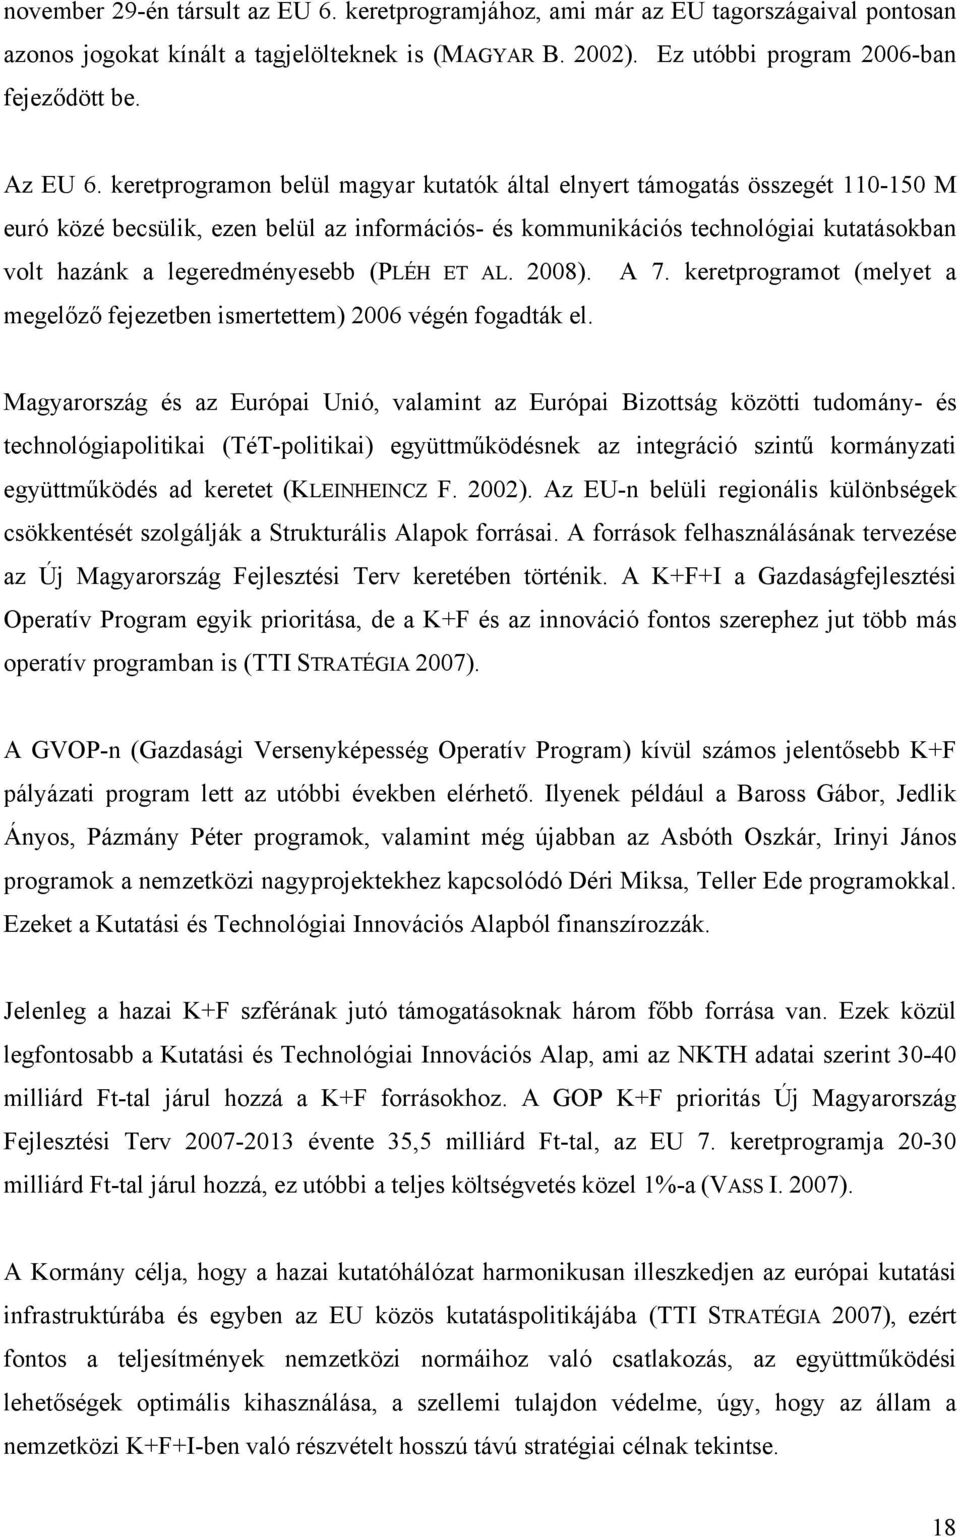 (PLÉH ET AL. 2008). A 7. keretprogramot (melyet a megelőző fejezetben ismertettem) 2006 végén fogadták el.